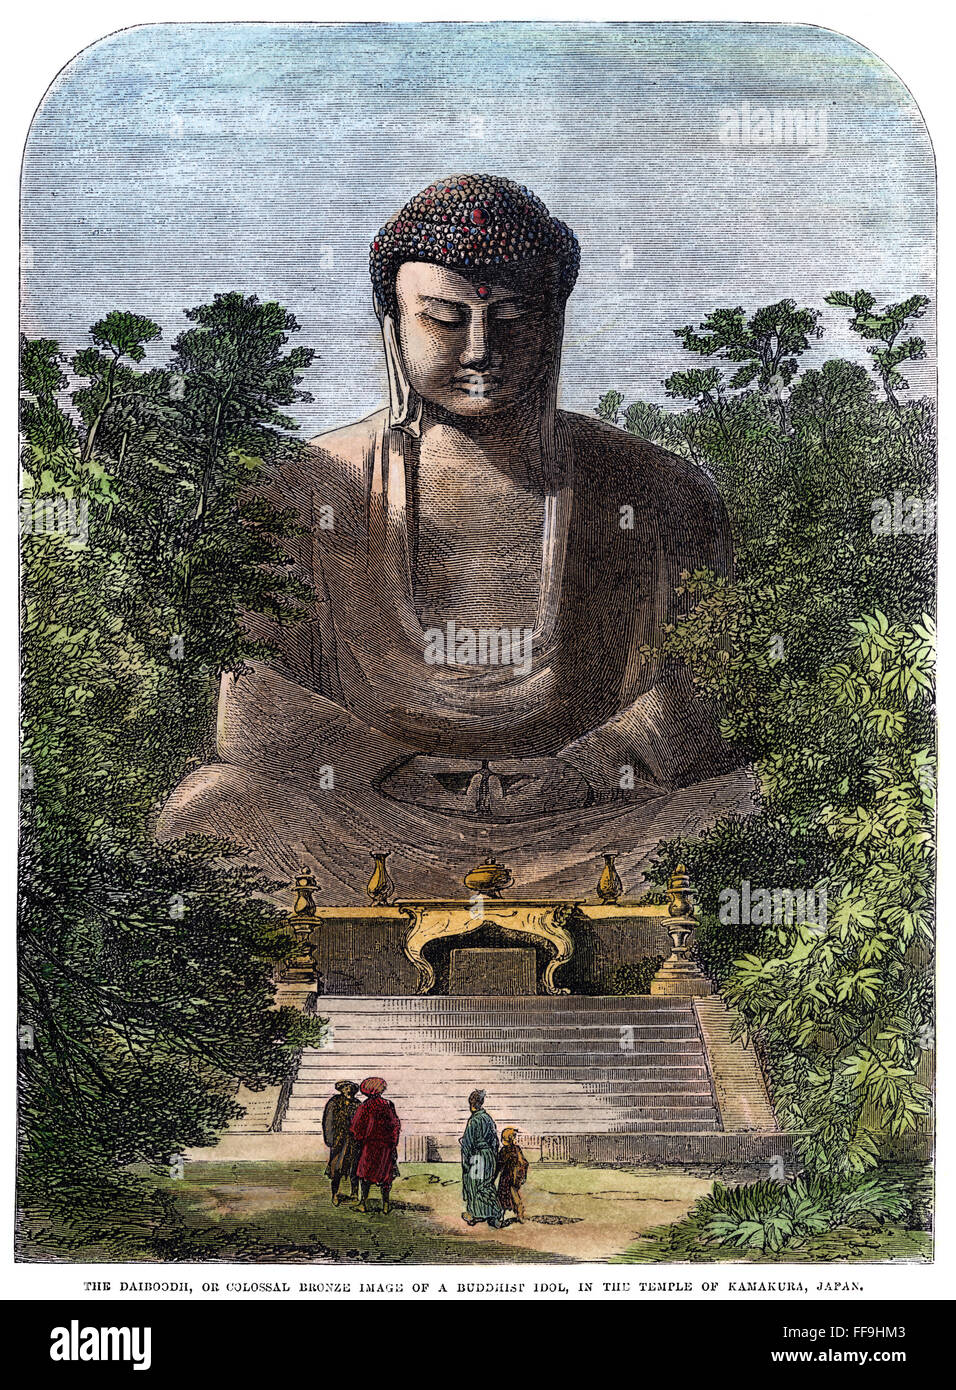 BUDDHA: KAMAKURA, Giappone. /N'Tegli Daibutsu o bronzo colossale immagine di un idolo buddista, nel tempio di Kamakura, Giappone.' incisione a colori, 1865. Foto Stock